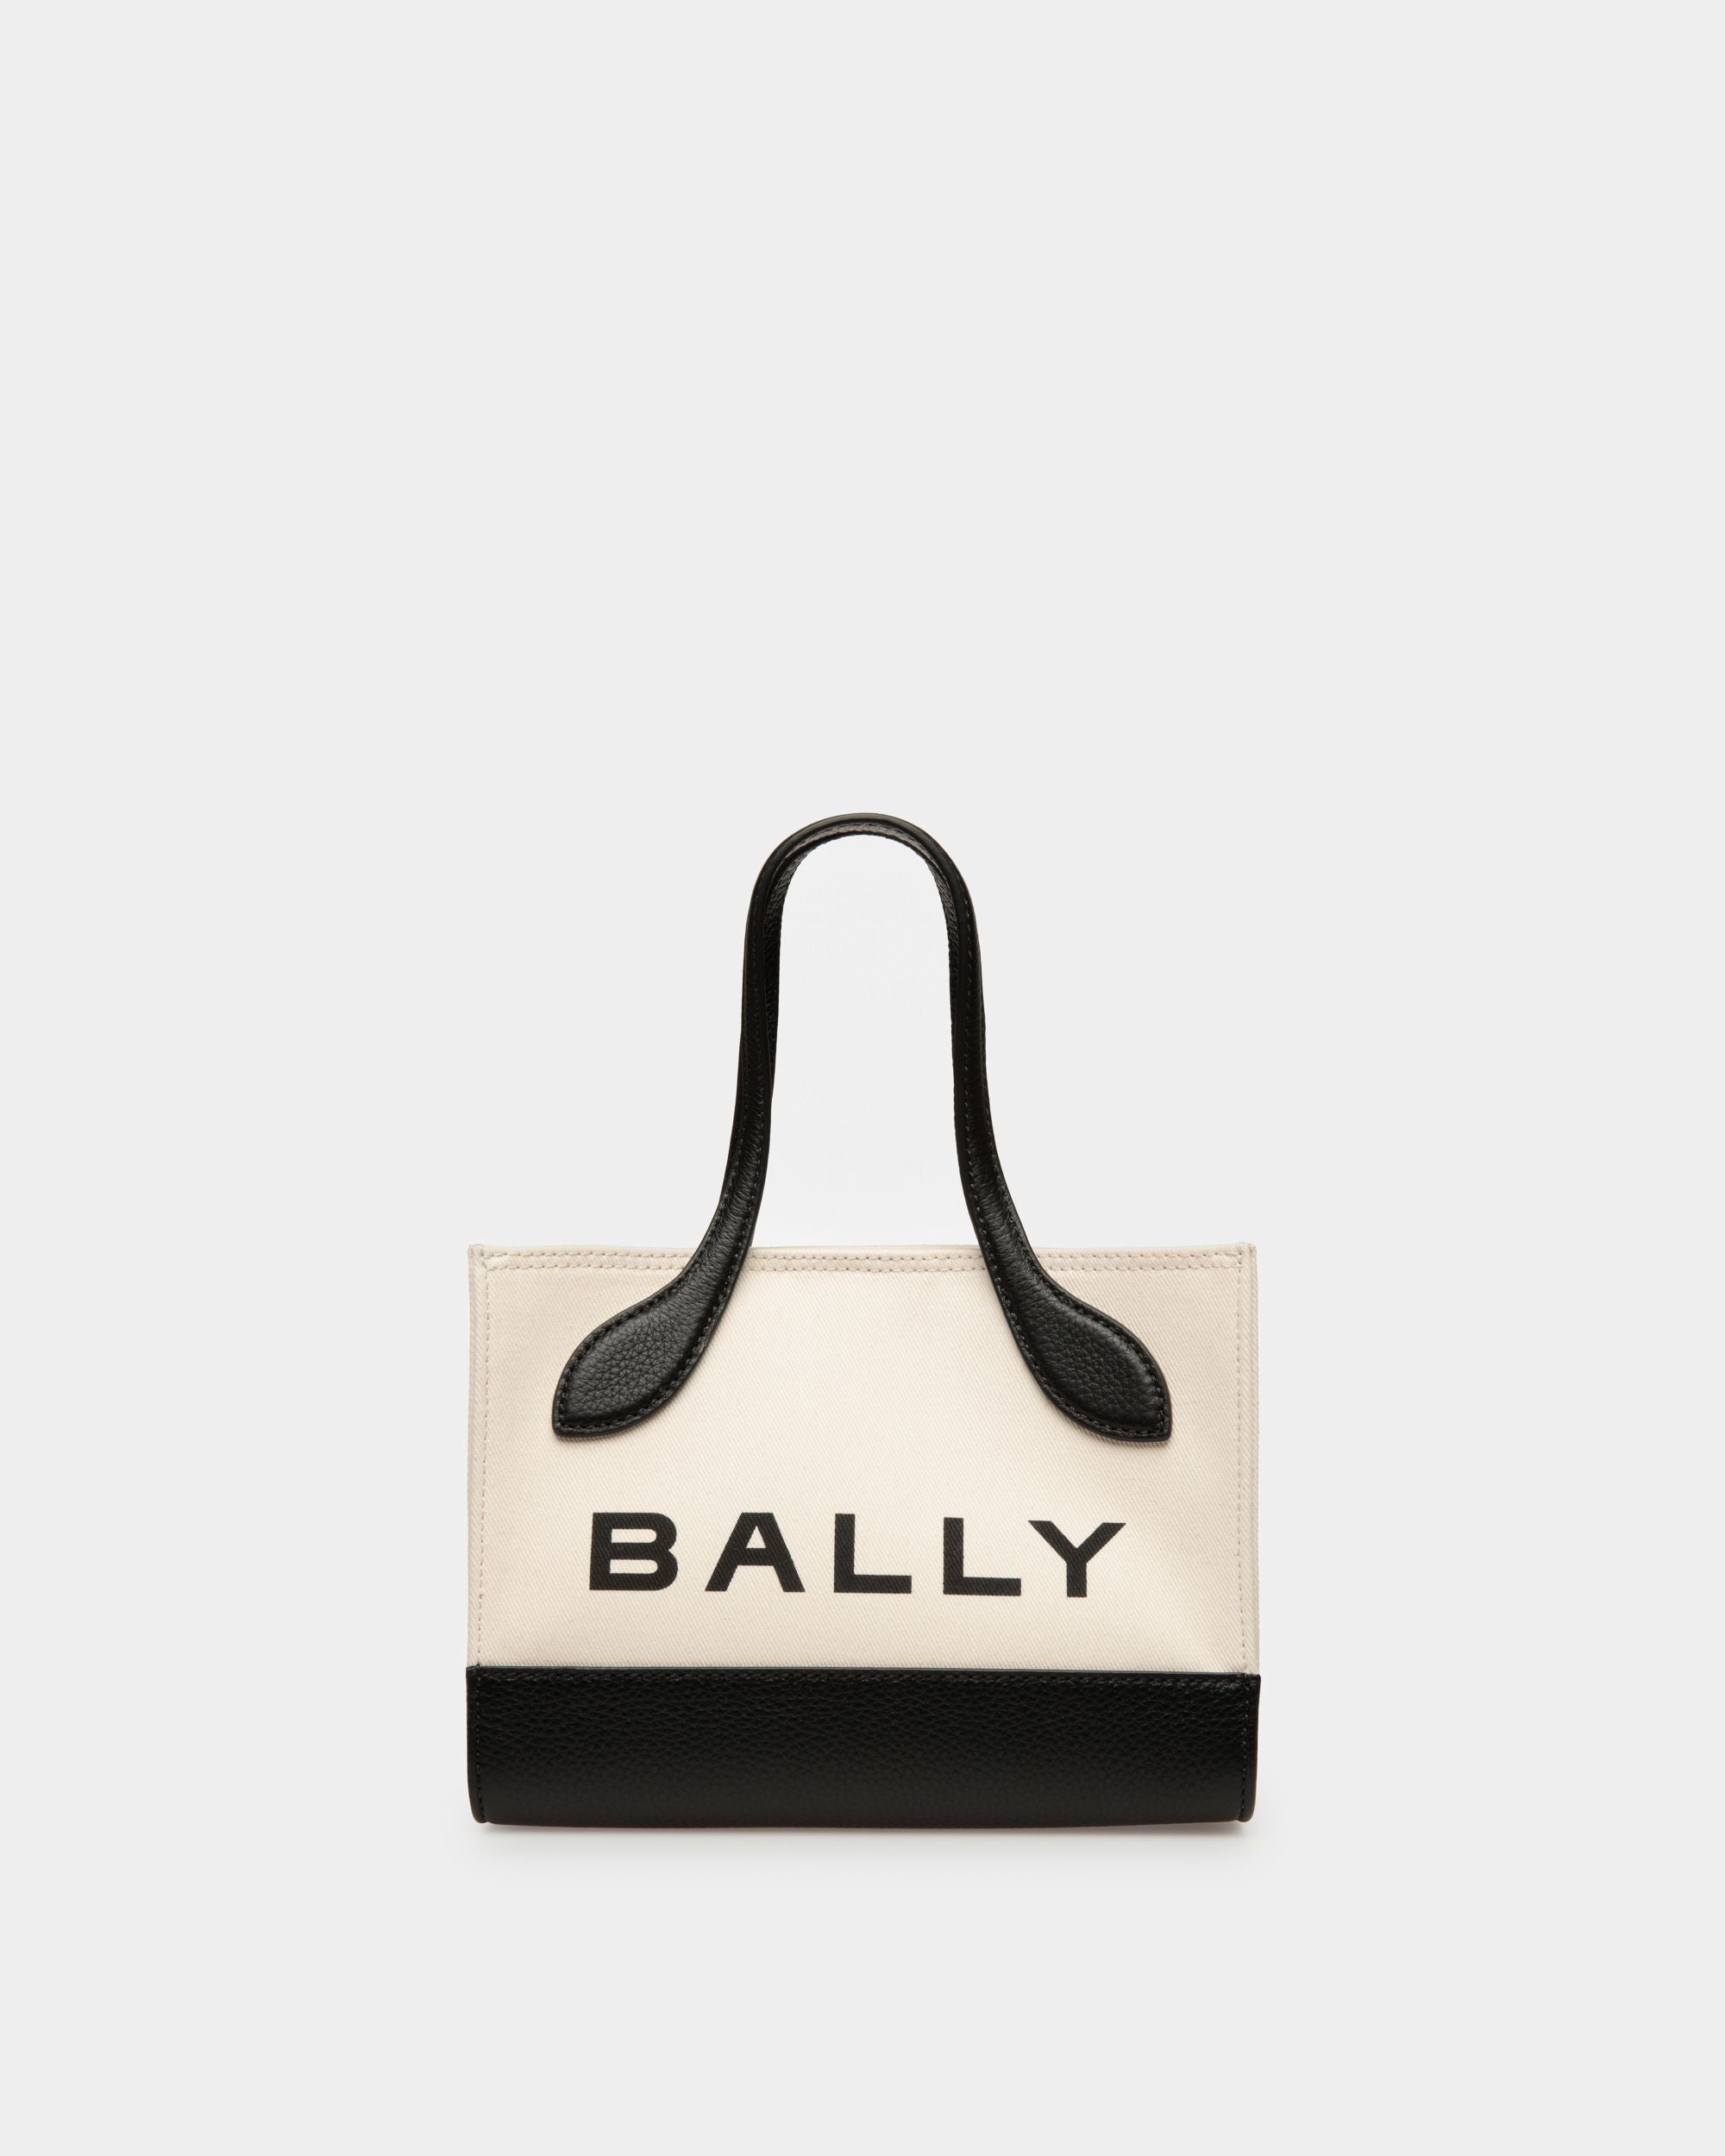 Keep On Extra Small | Minibag für Damen | Textil in Natur und Schwarz | Bally | Still Life Vorderseite